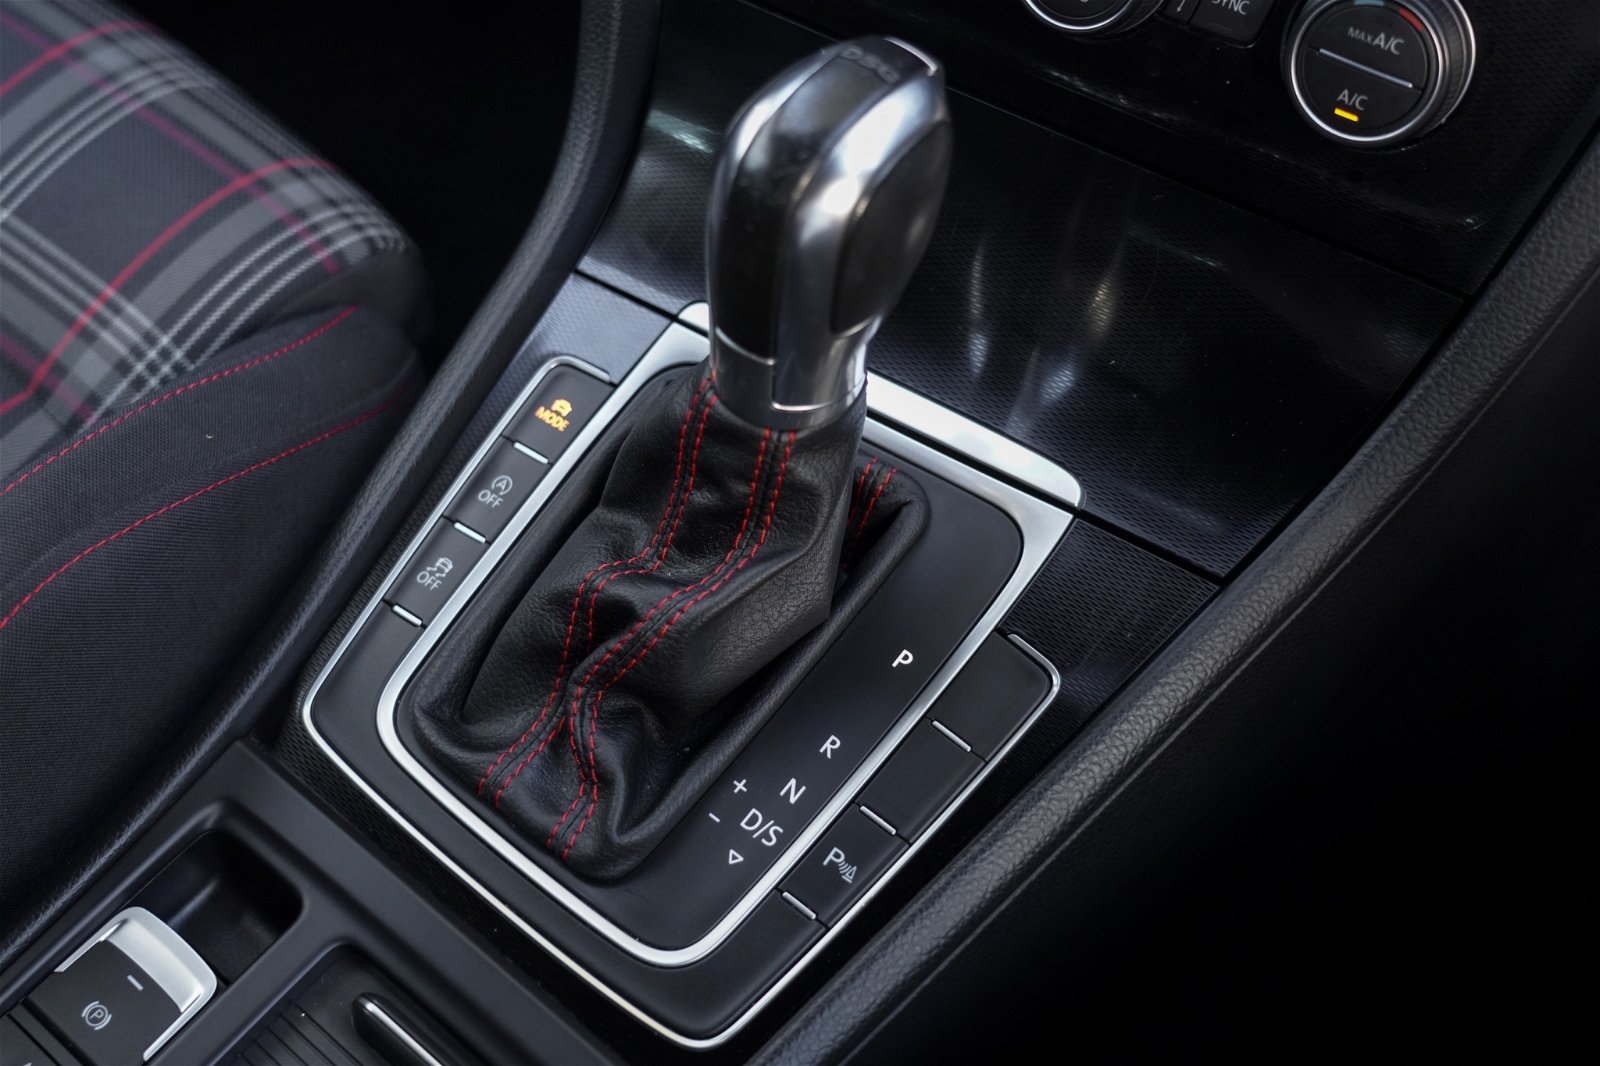 2015 Volkswagen Golf GTI162KW 2.0P 6A5Dr Hatch